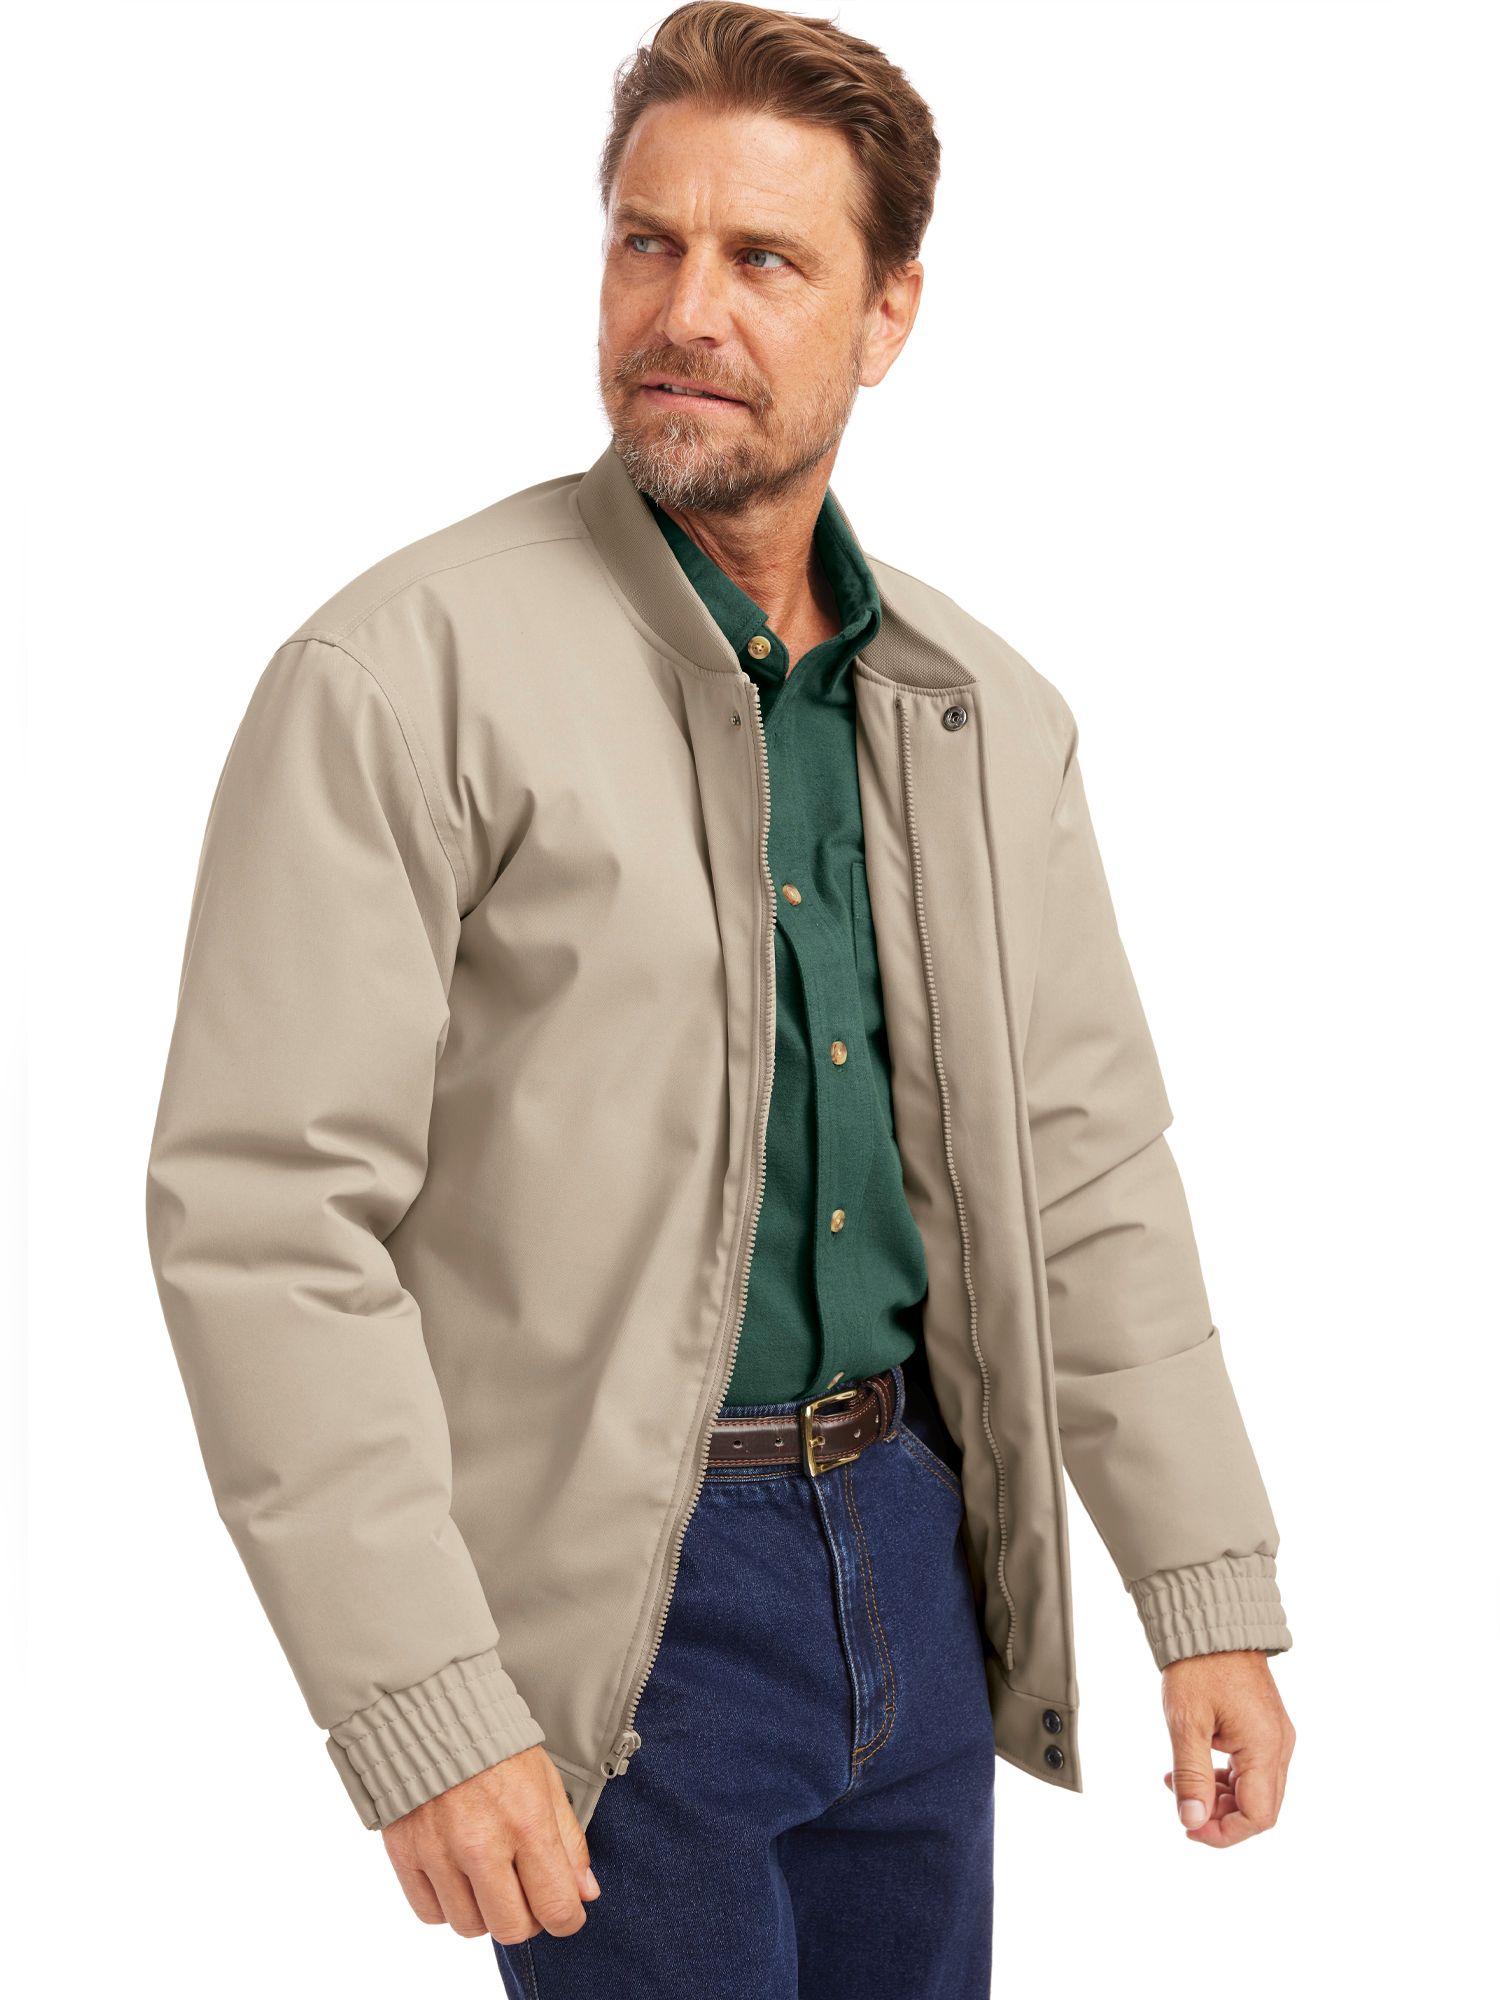 Men's Outerwear Catalog - Jackets, Vests, Parkas & More | Blair